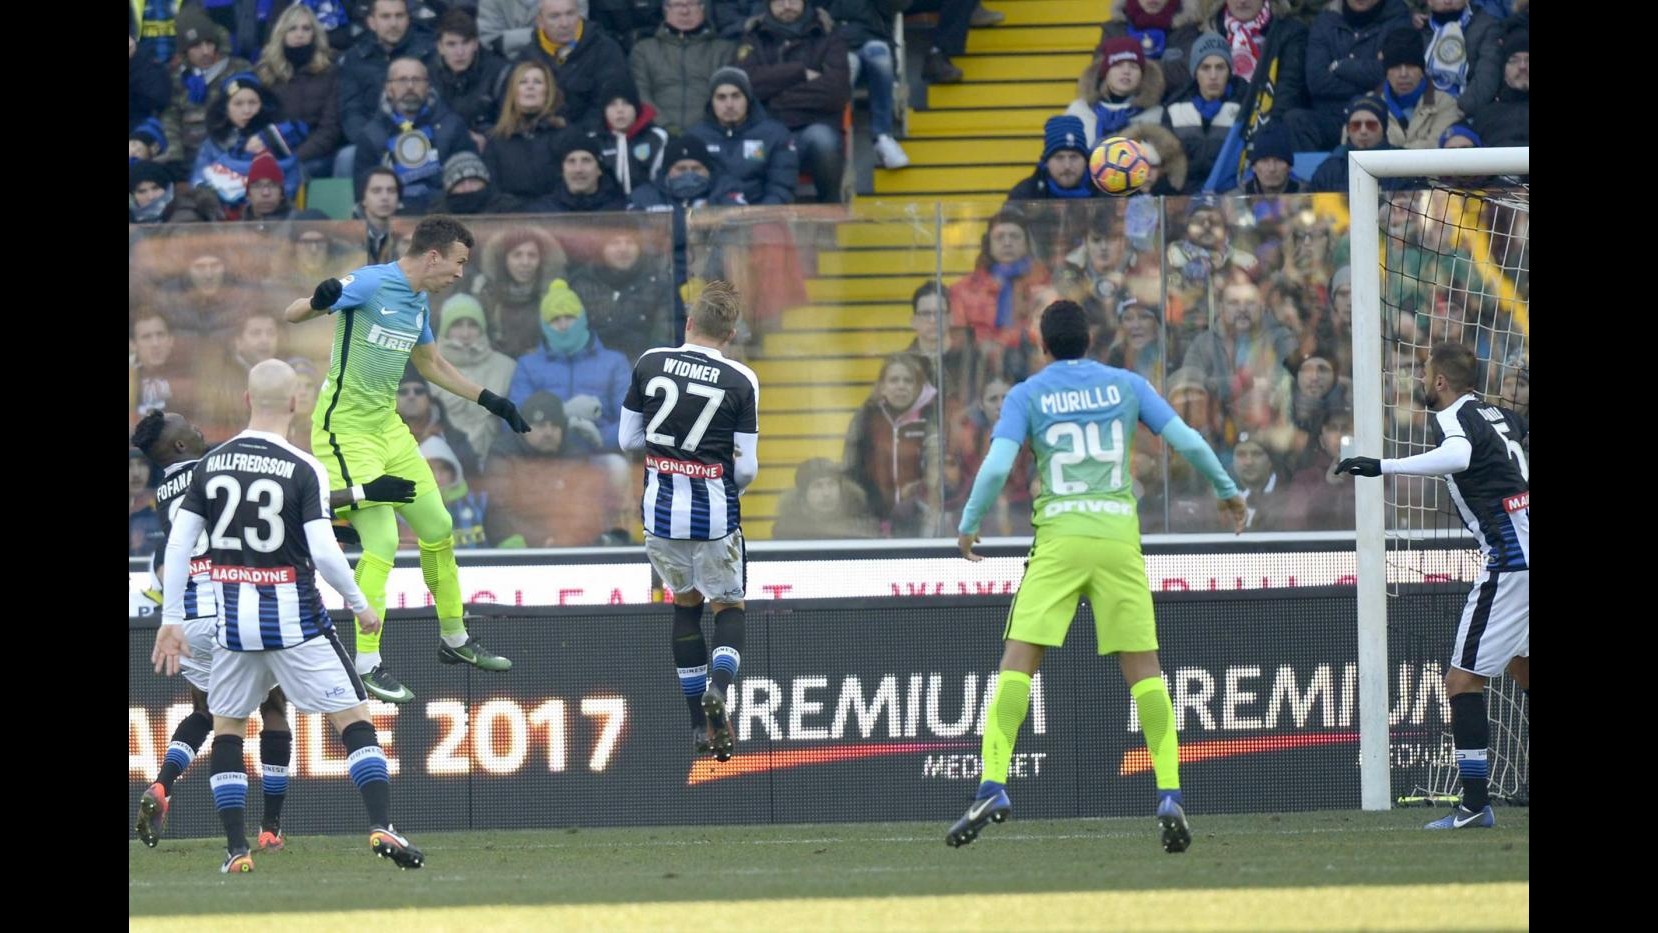 FOTO Serie A, Inter supera Udinese 2-1: doppietta di Perisic